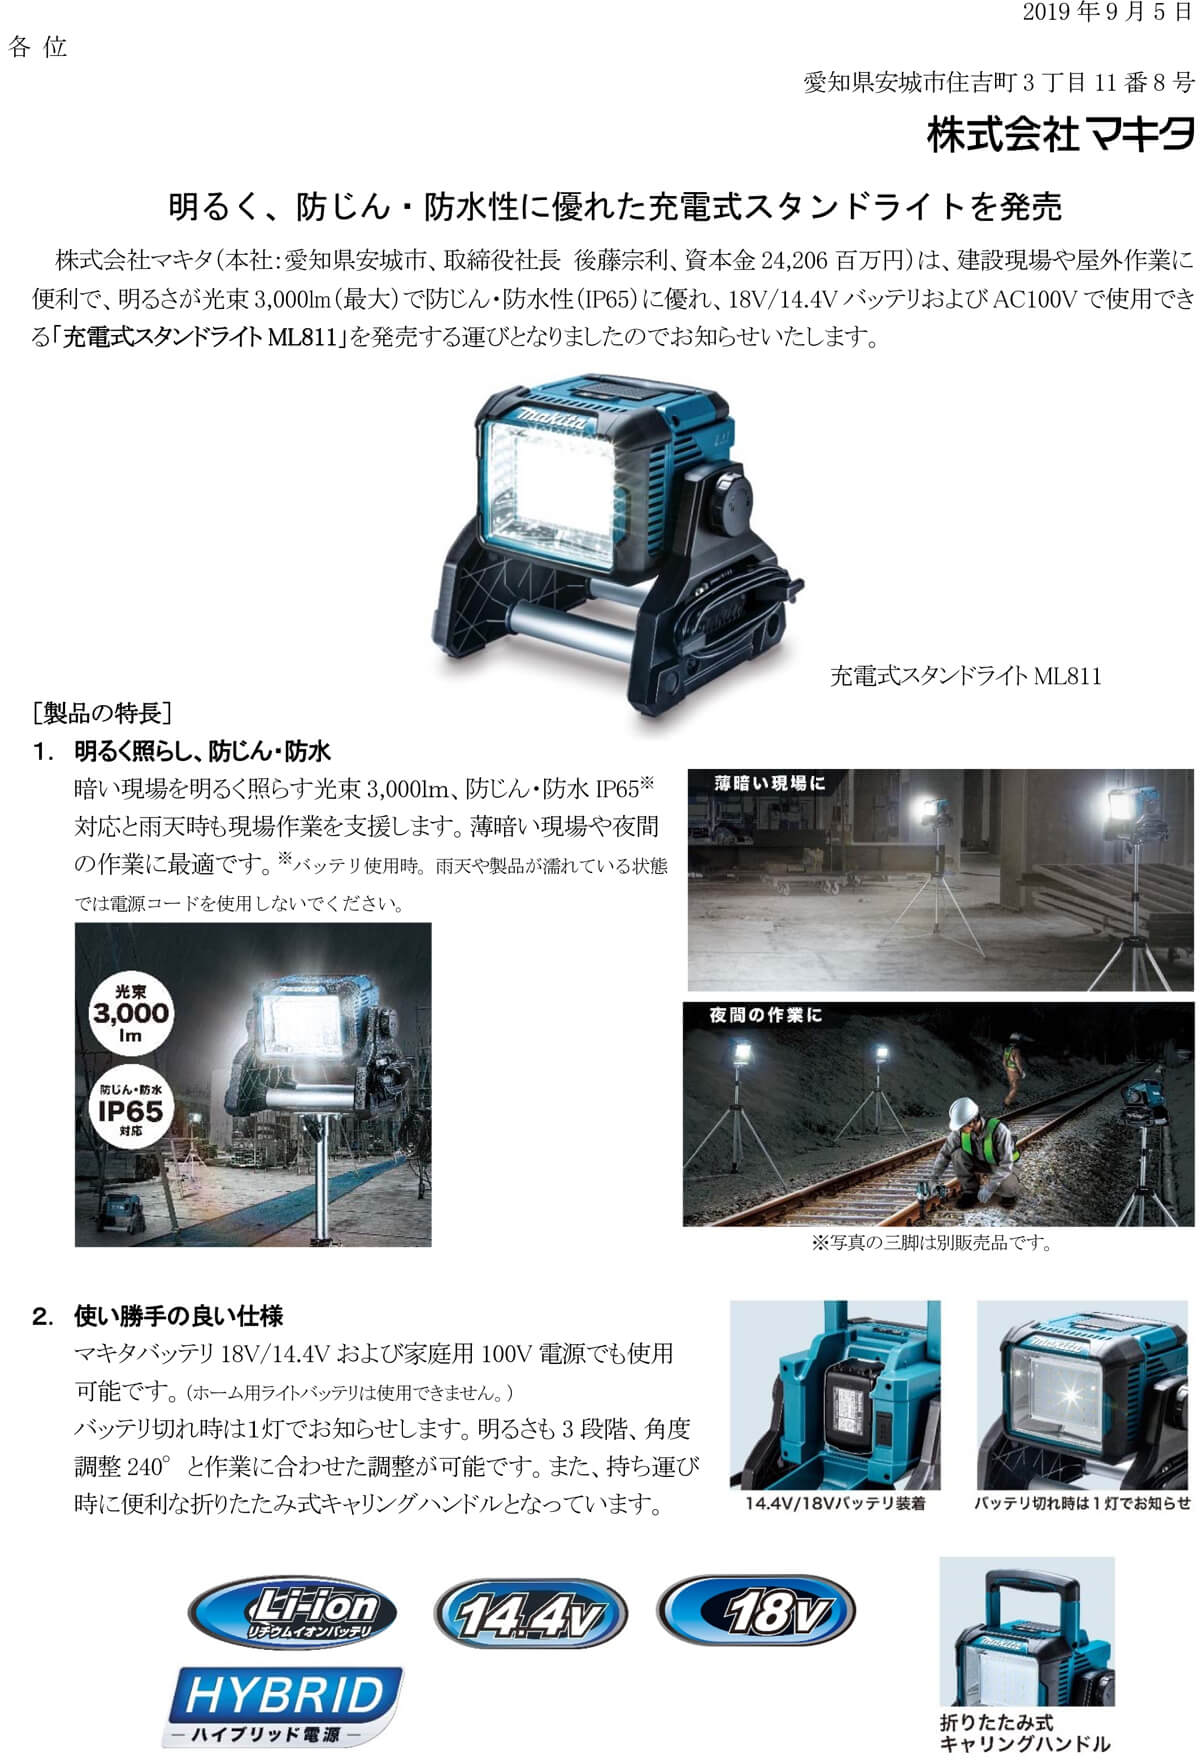 照明器具 マキタ スタンドライト 14.4V 18Vバッテリ・AC100V両用ML809 バッテリ別売 - 3